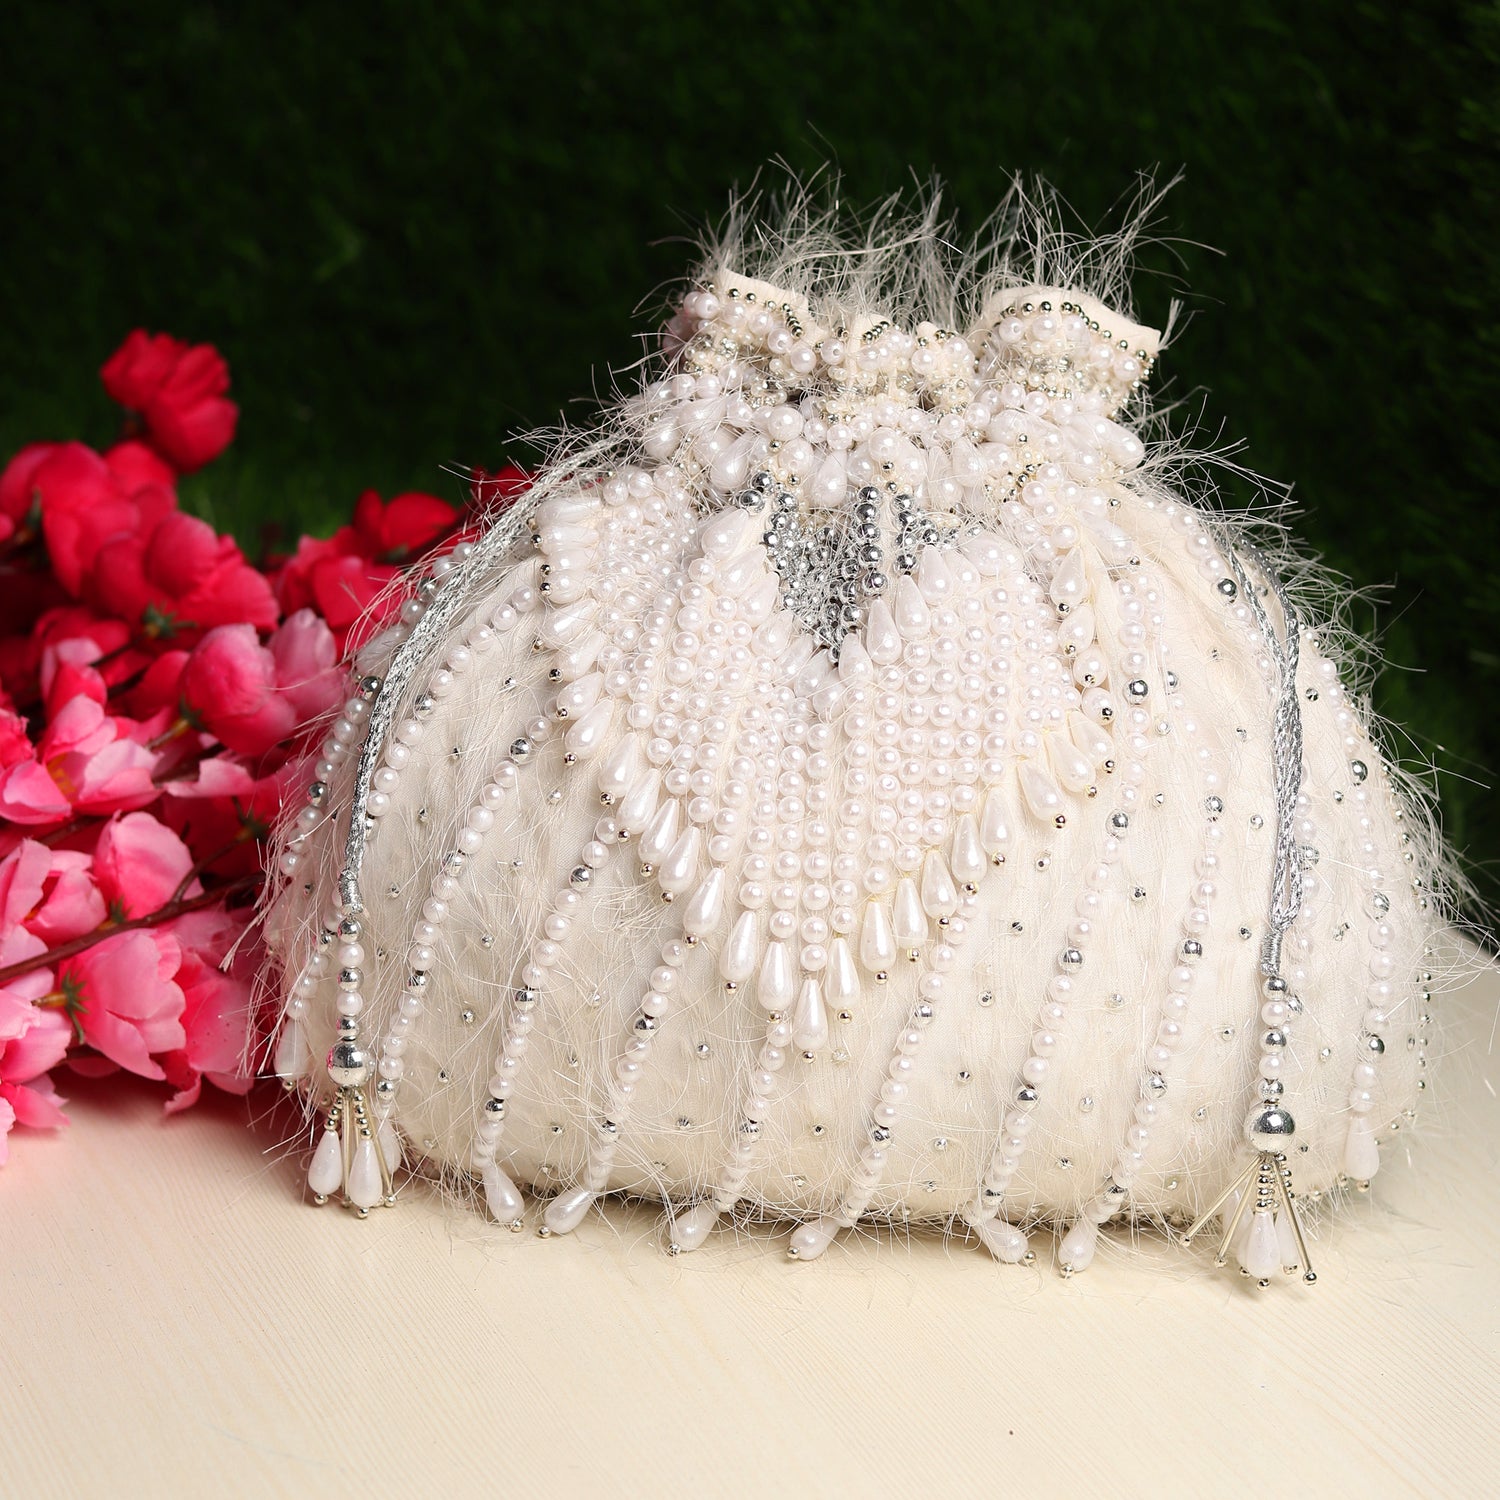 GESU Womens Crystal Evening Clutch Bag Wedding Purse Bridal Prom Handbag  Party Bag.: Buy Online at Best Price in UAE - Amazon.ae